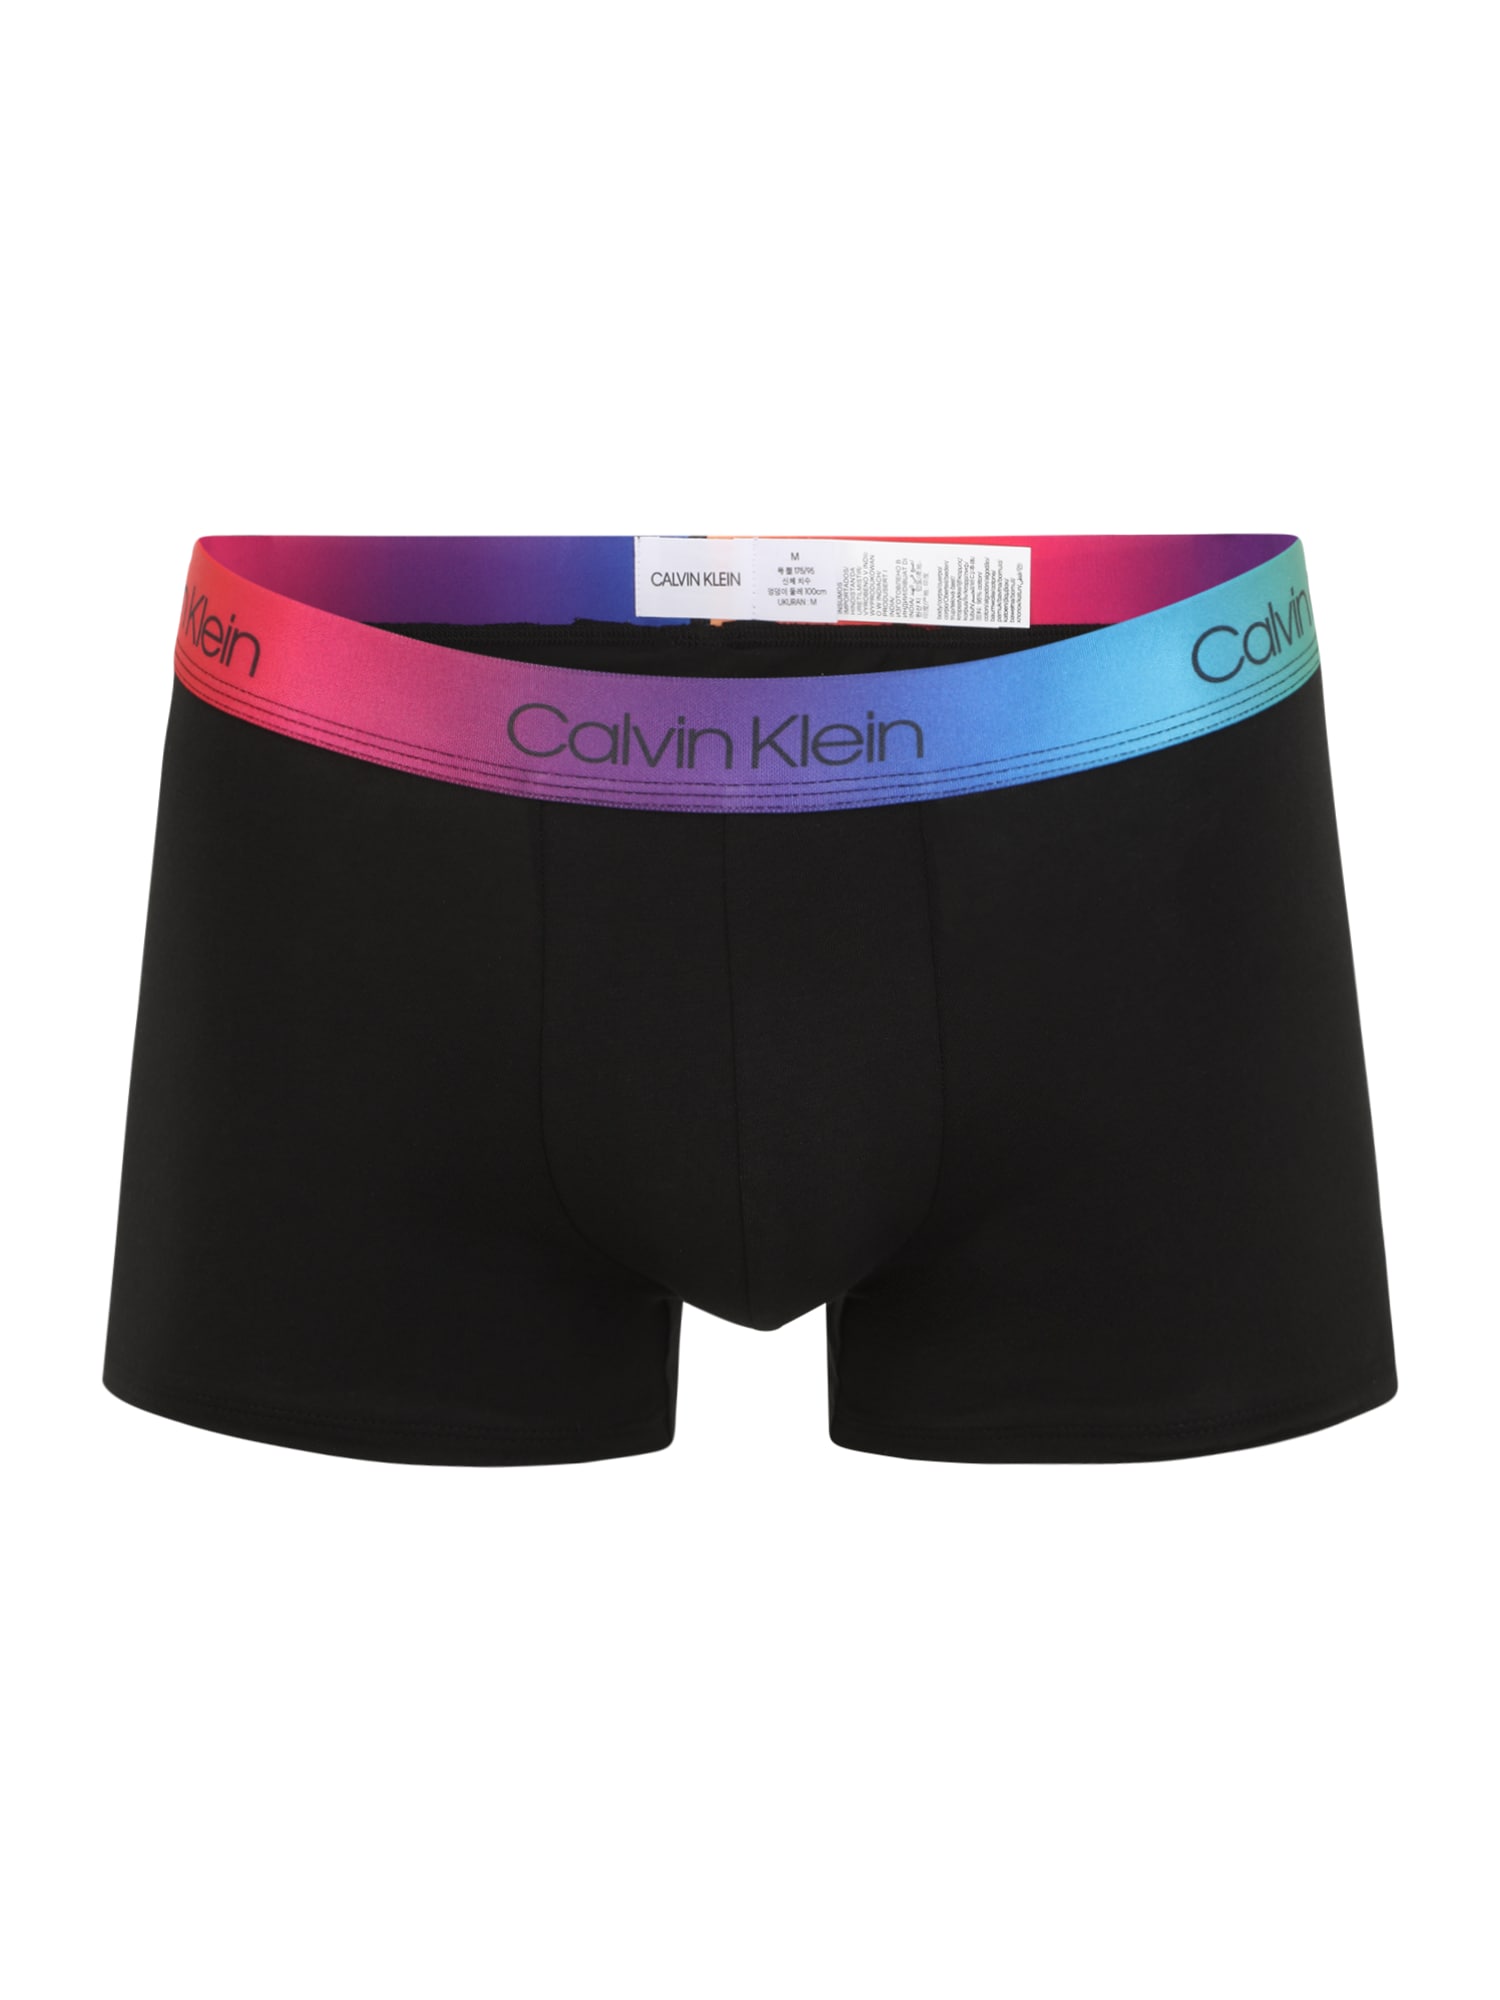 Boxershorts von Calvin Klein Underwear